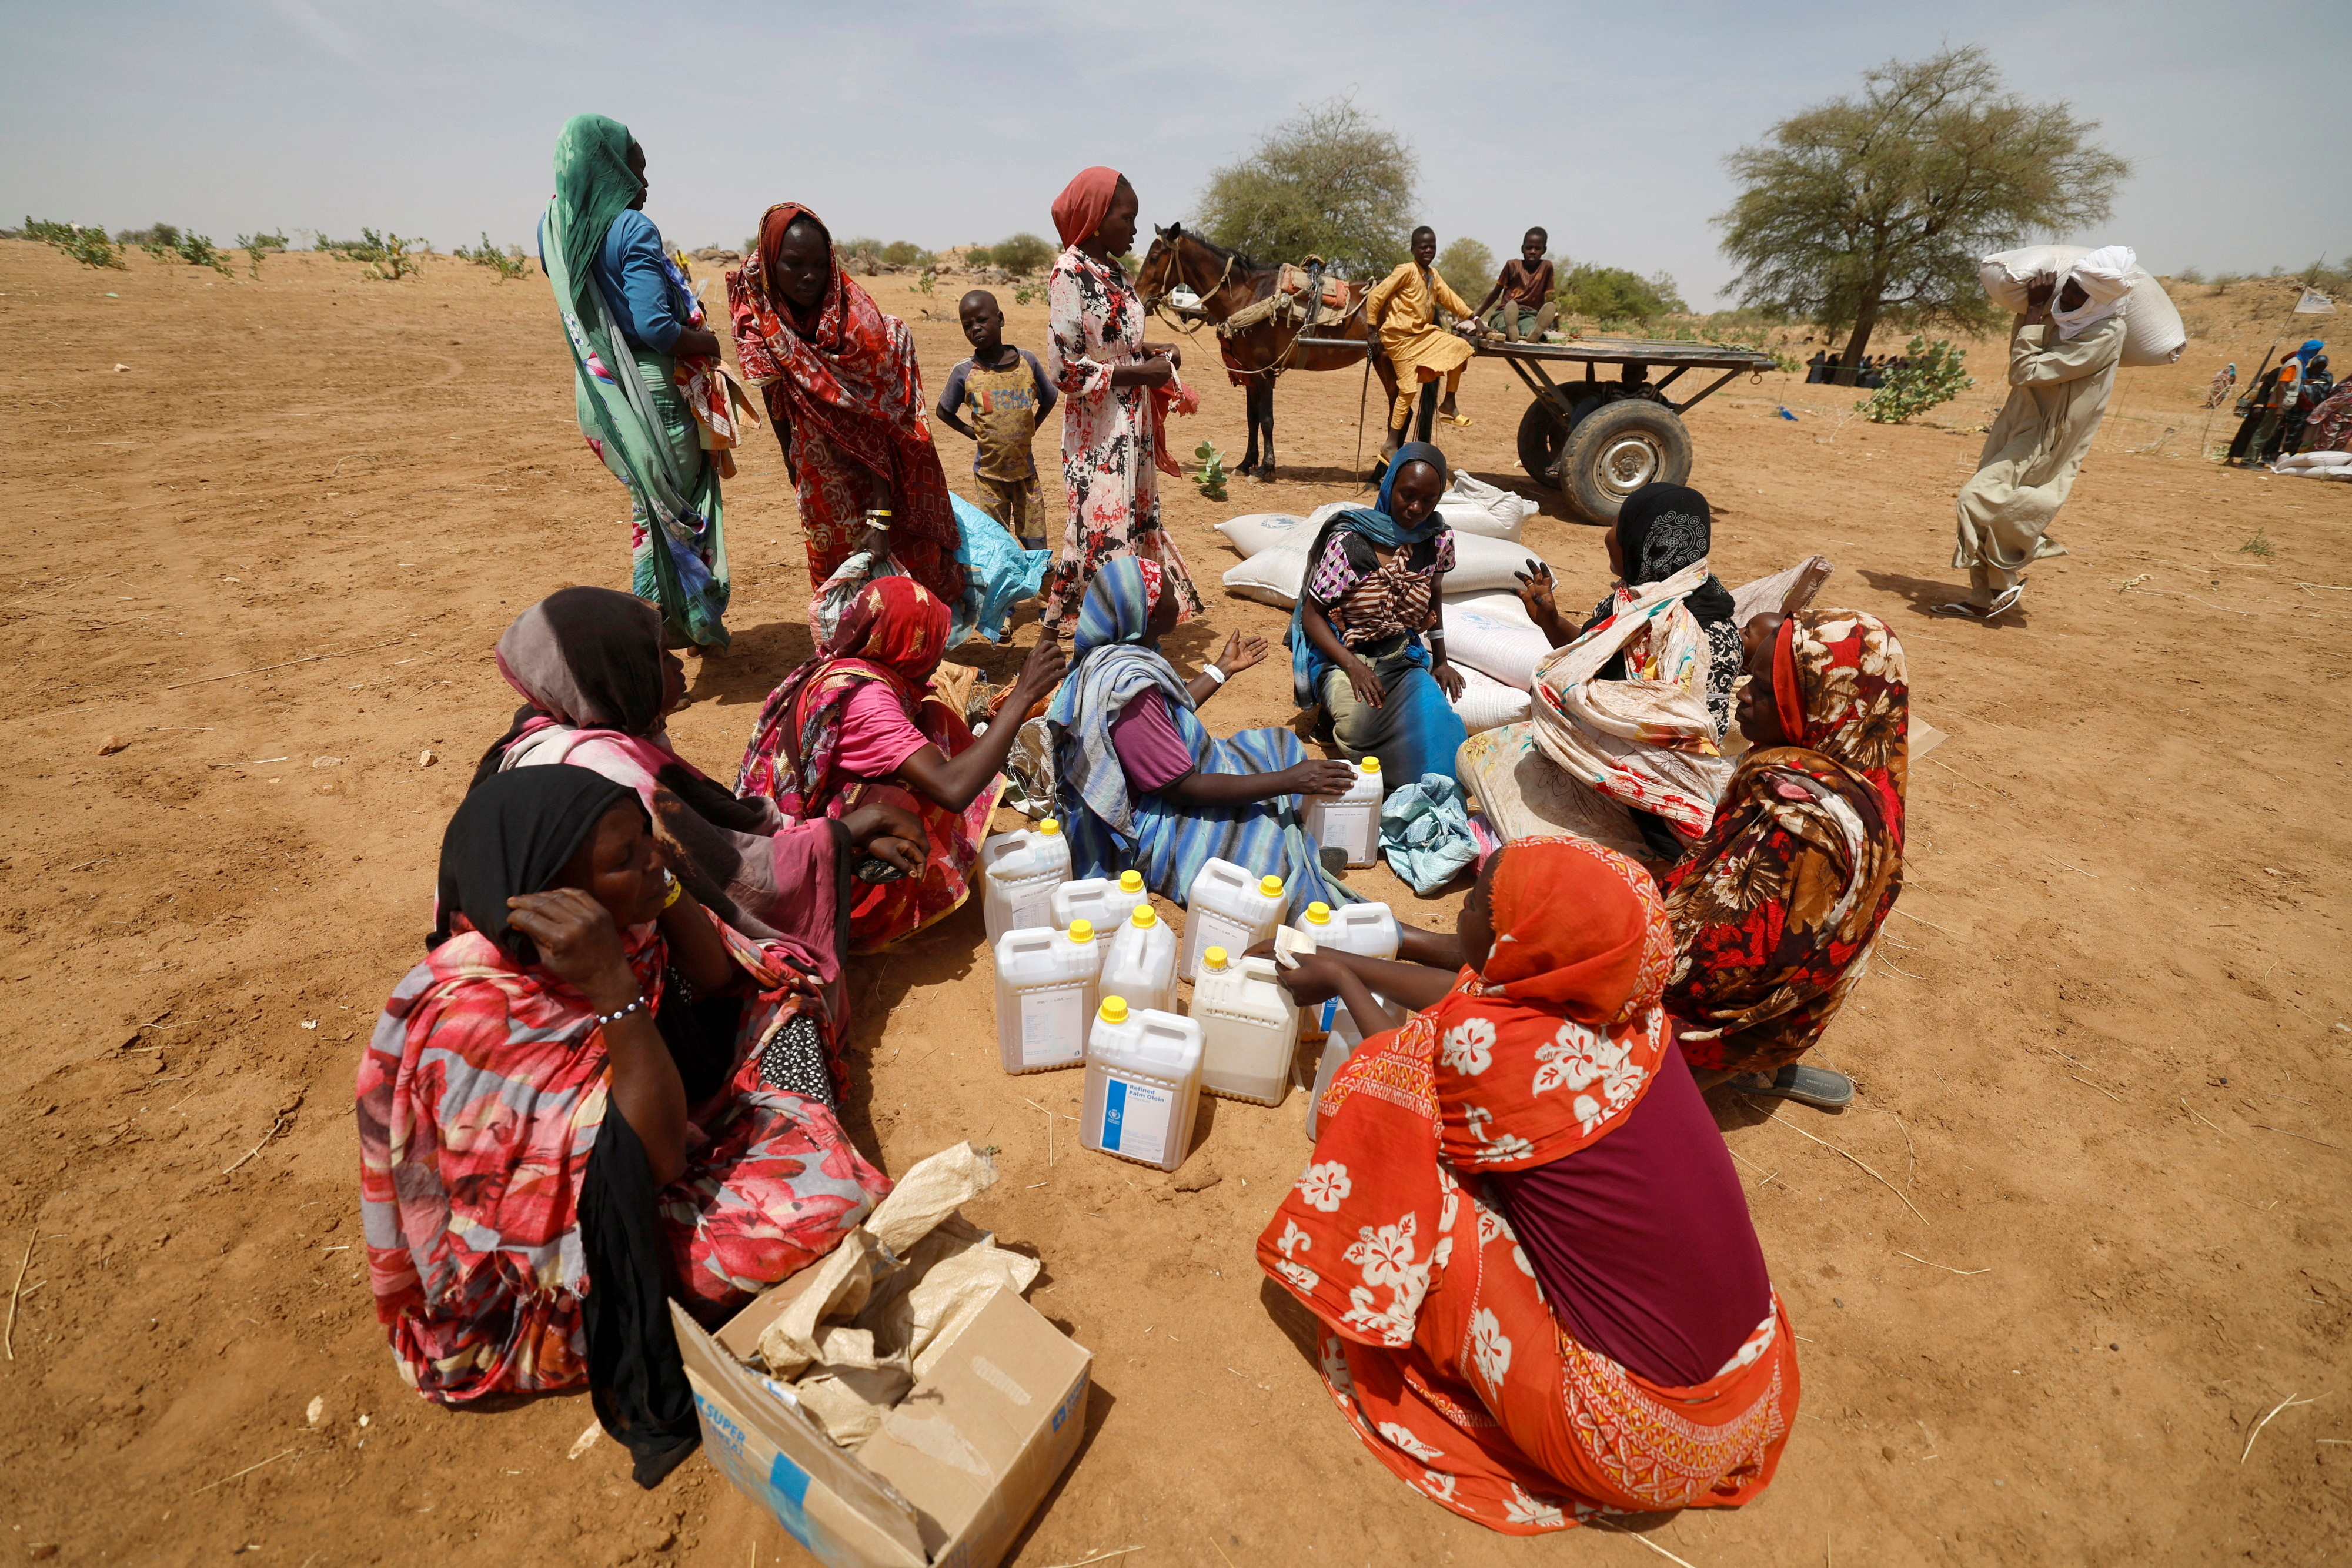 Desplazados buscan refugio en Chad (REUTERS/Zohra Bensemra)